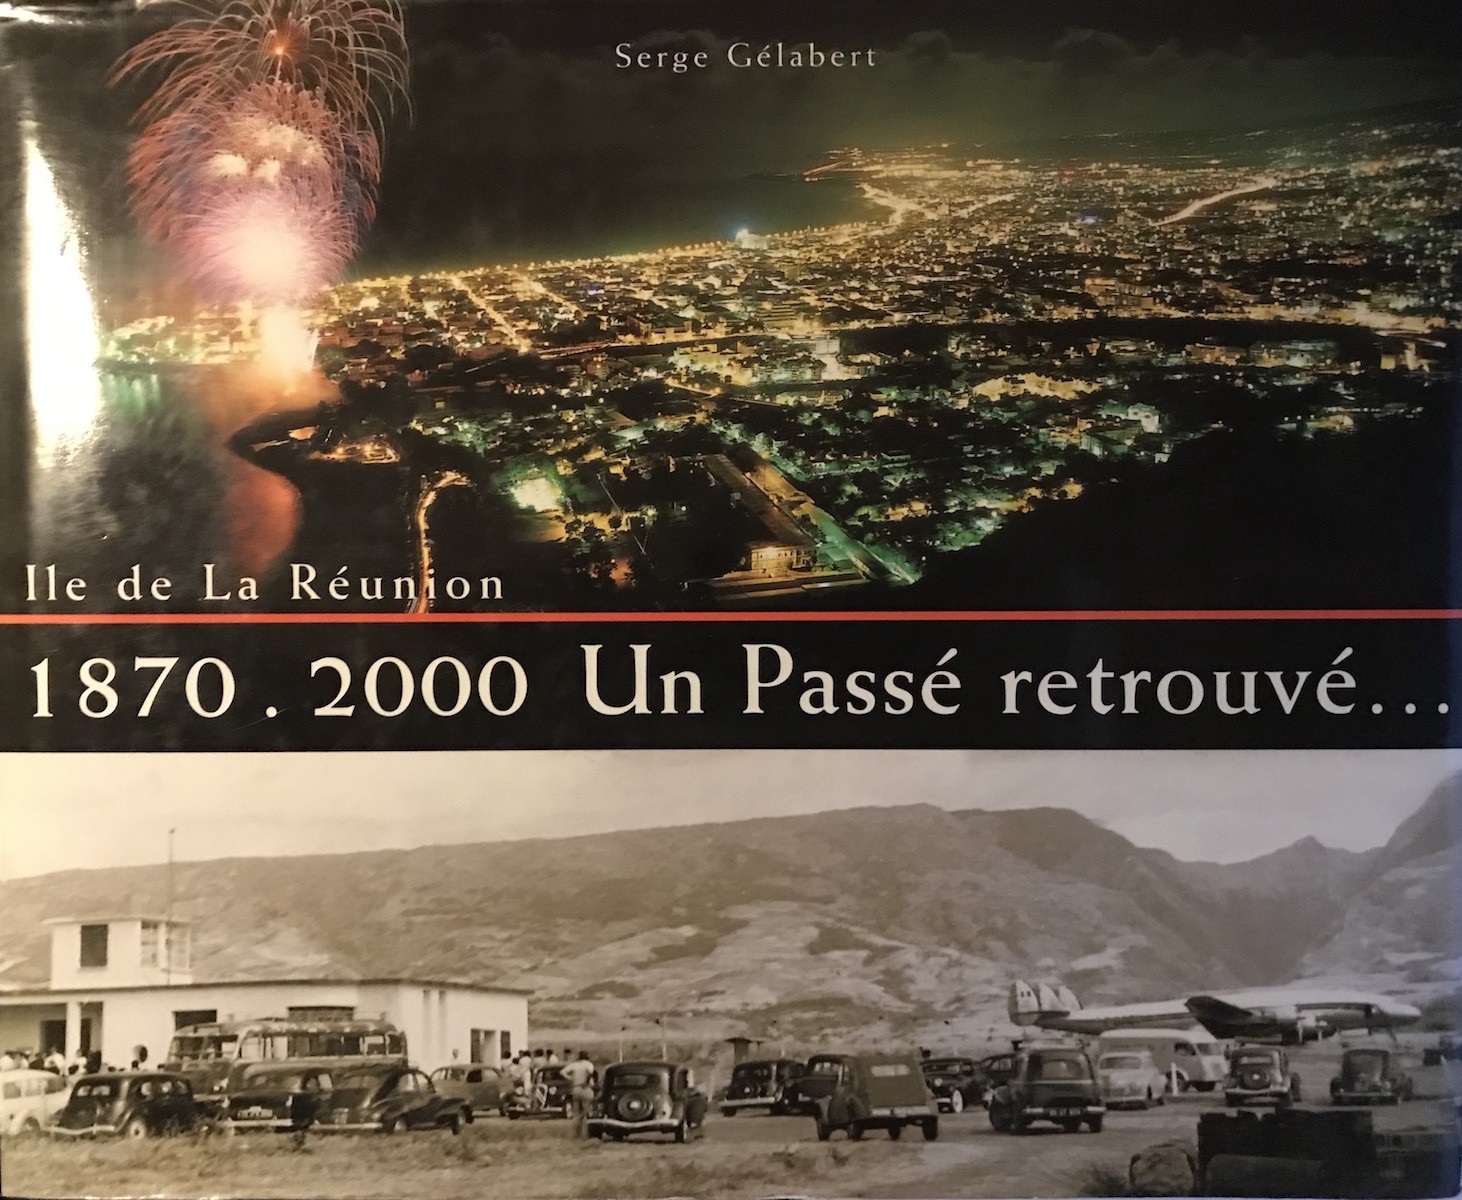 1870-2000 - Un passé retrouvé - Île de La Réunion